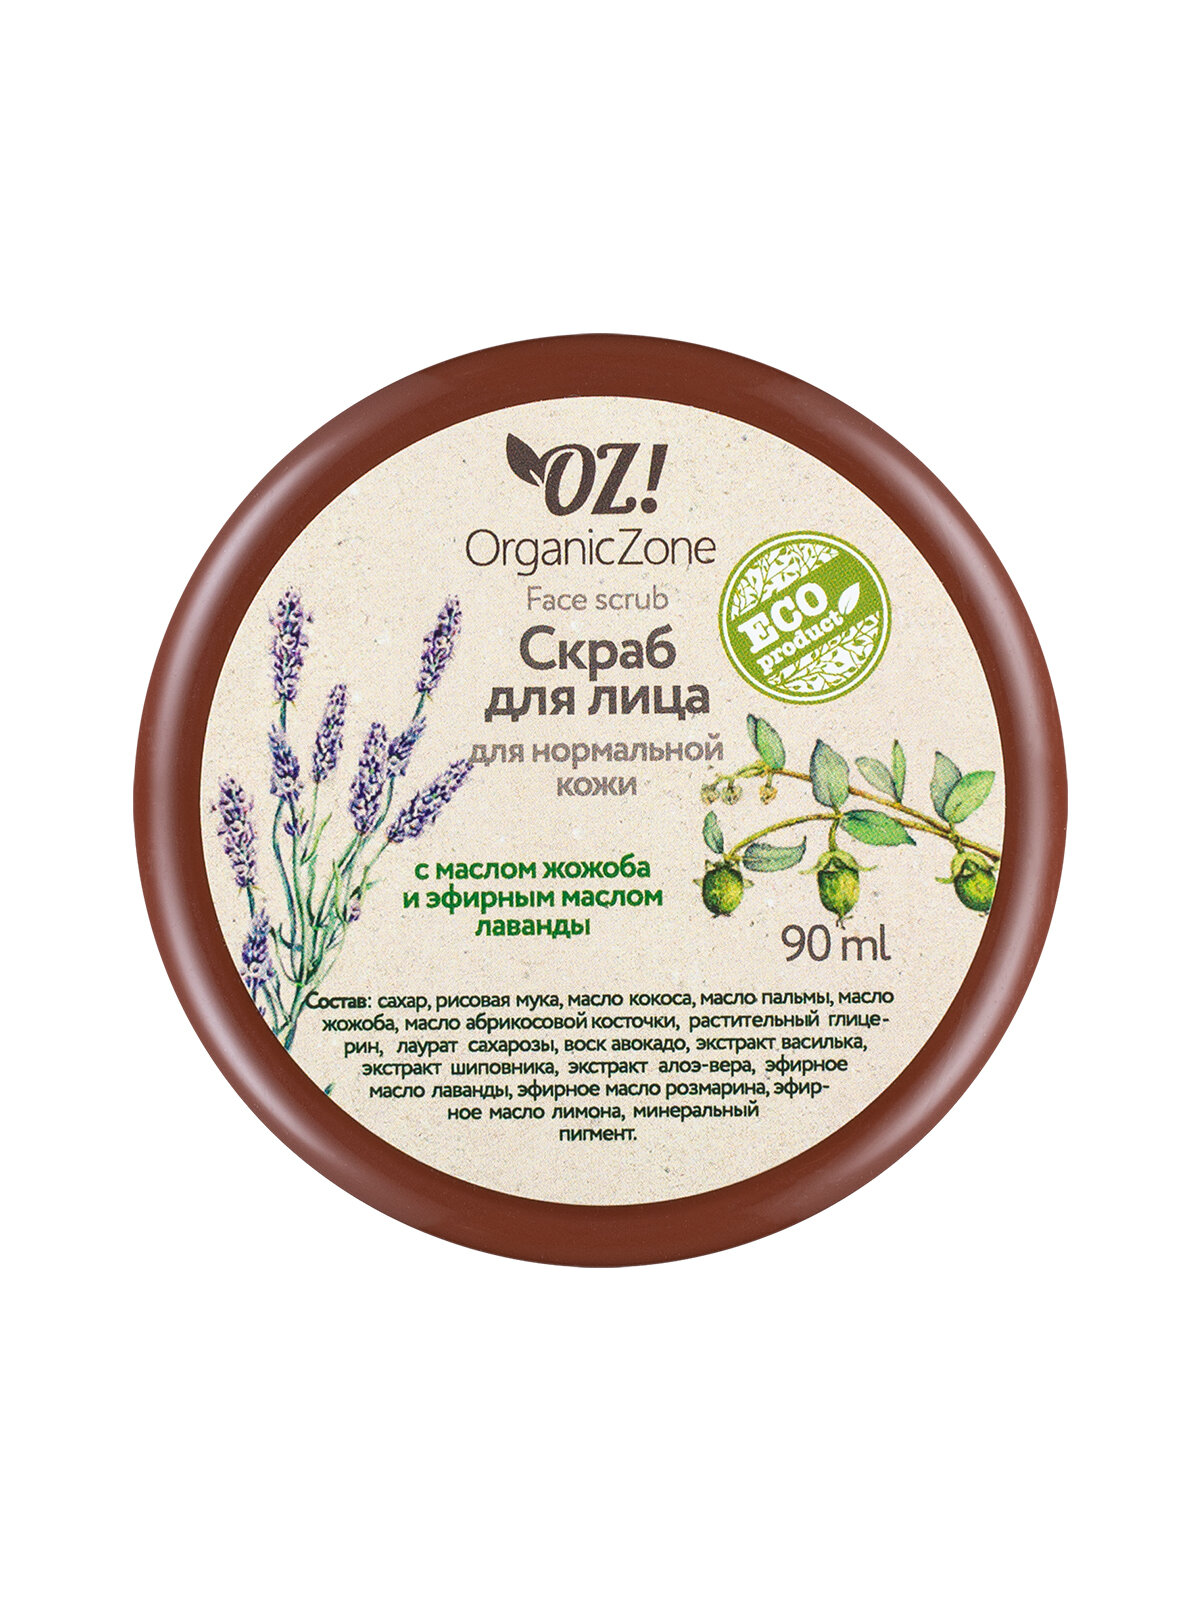 OZ! OrganicZone скраб для лица с маслом жожоба и эфирным маслом лаванды для нормальной кожи, 90 мл